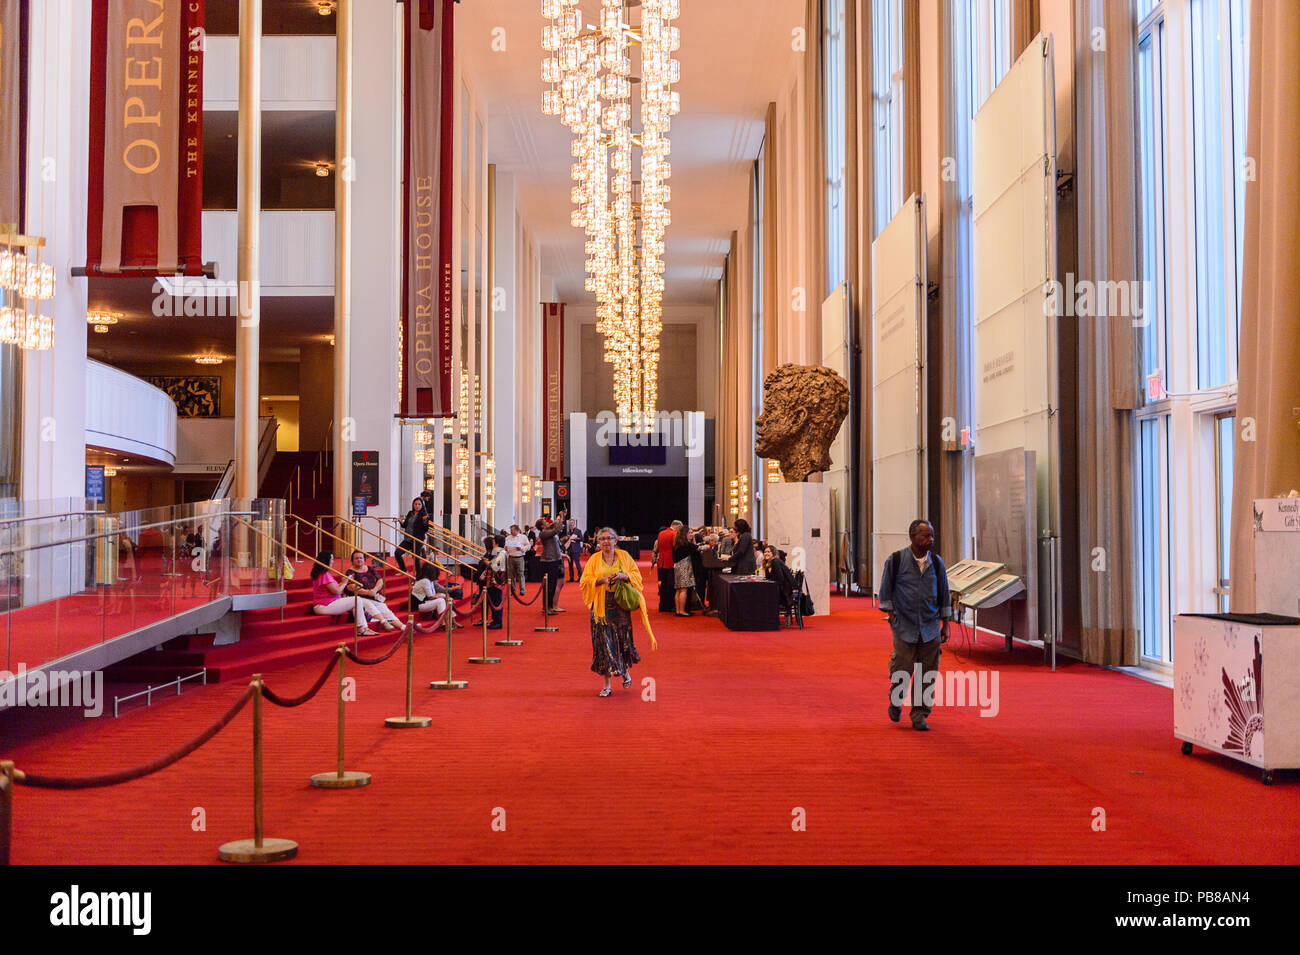 WASHINGTON, Etats-Unis - Sep 24, 2015 : Intérieur du John F. Kennedy Center for the Performing Arts Le Centre produit et présente du théâtre, de la danse, de balle Banque D'Images